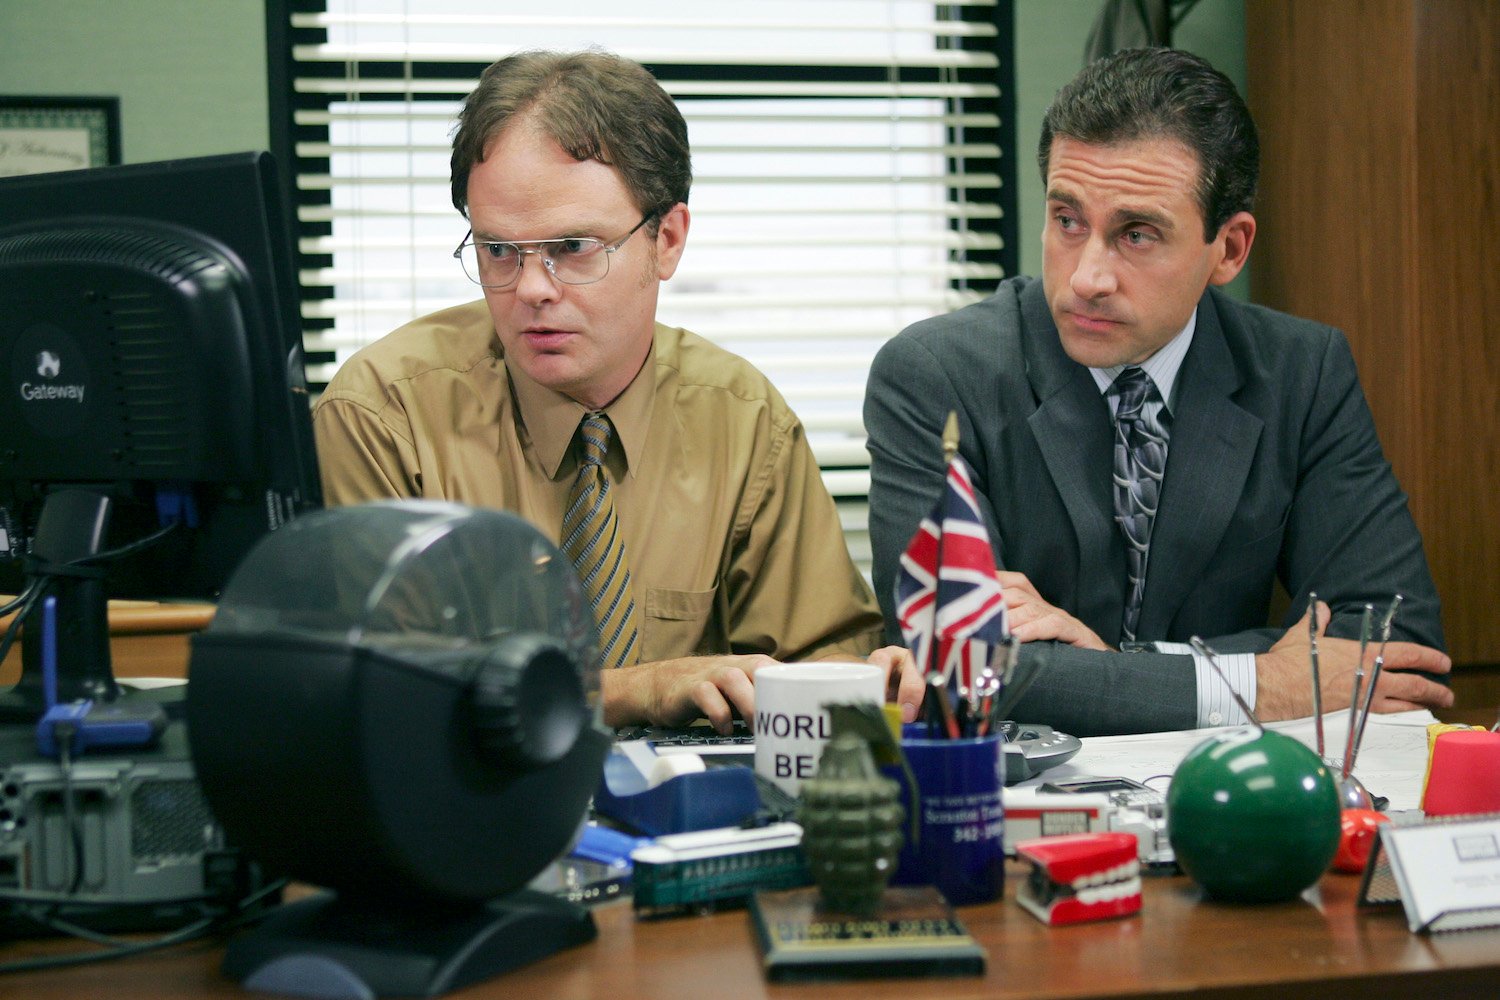 The Office: Rainn Wilson as Dwight Schrute and Steve Carell as Michael Scott